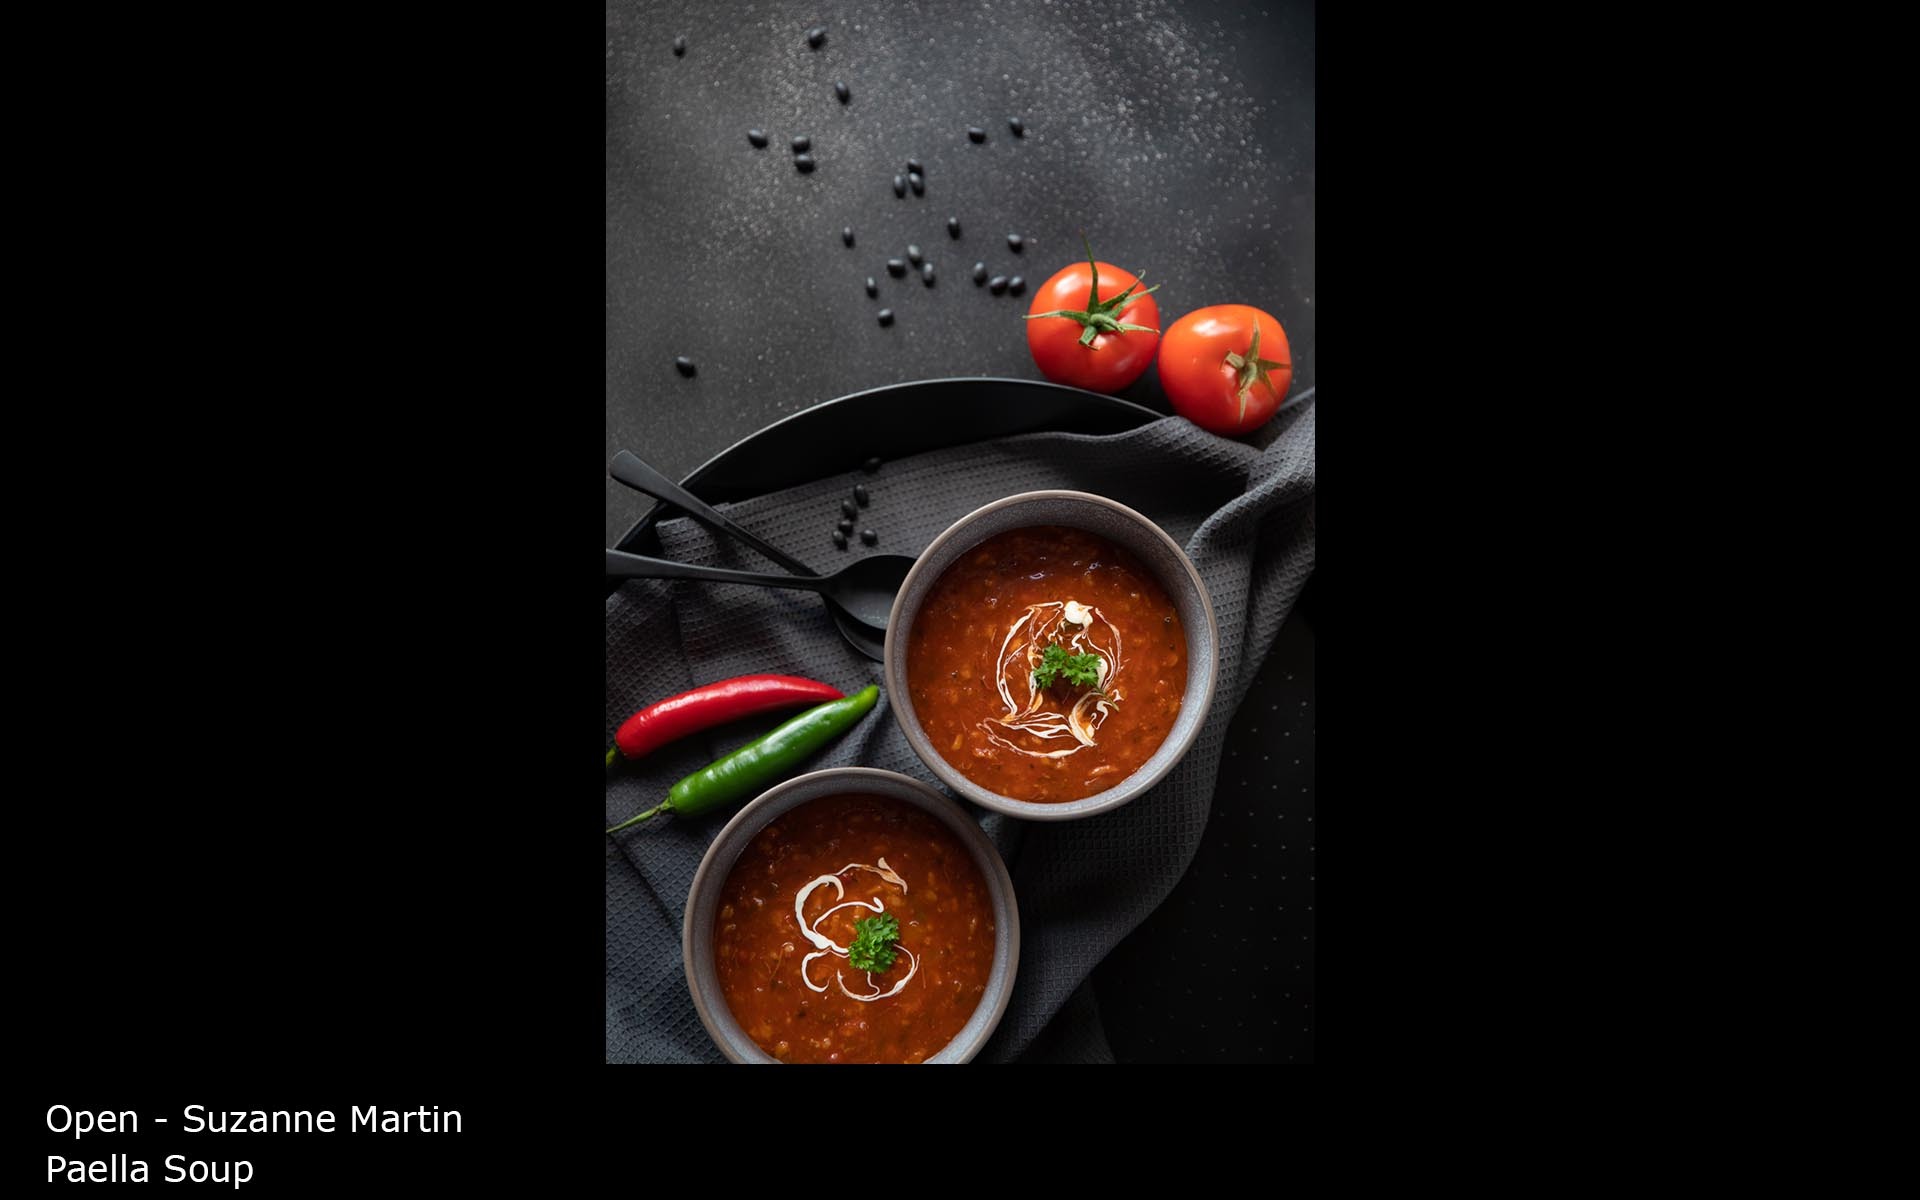 Paella Soup - Suzanne Martin